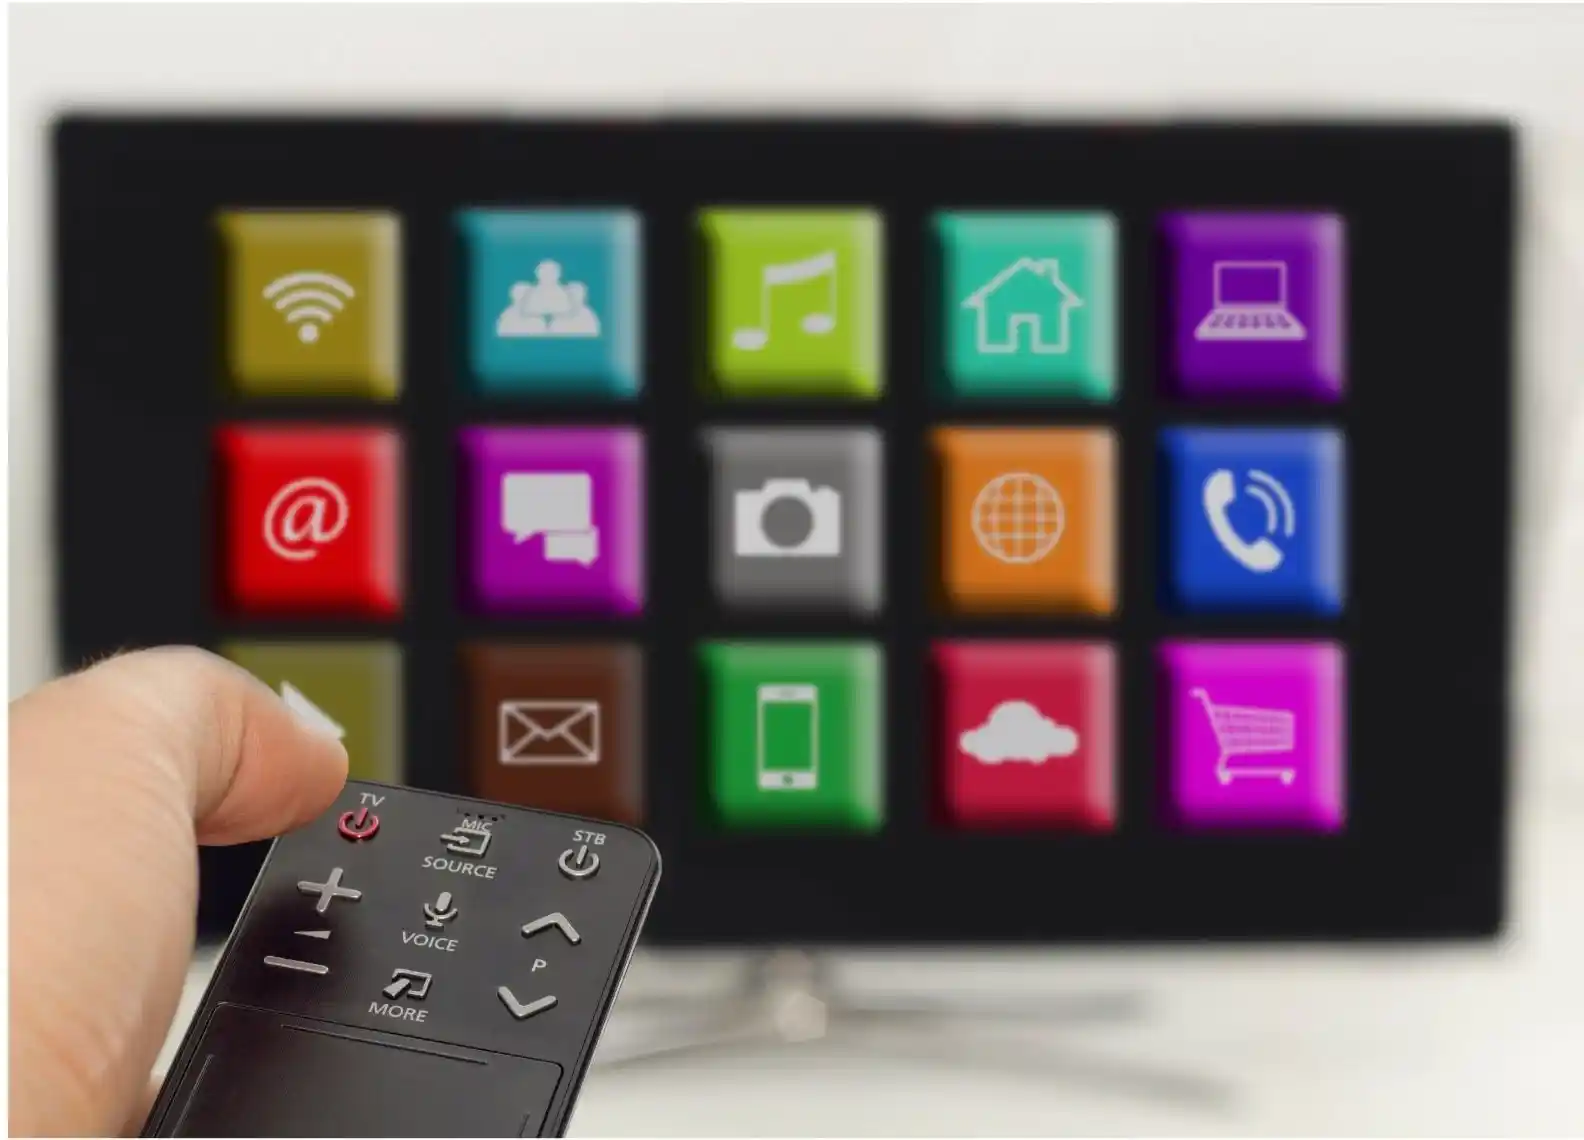 Installer une application sur une smart TV